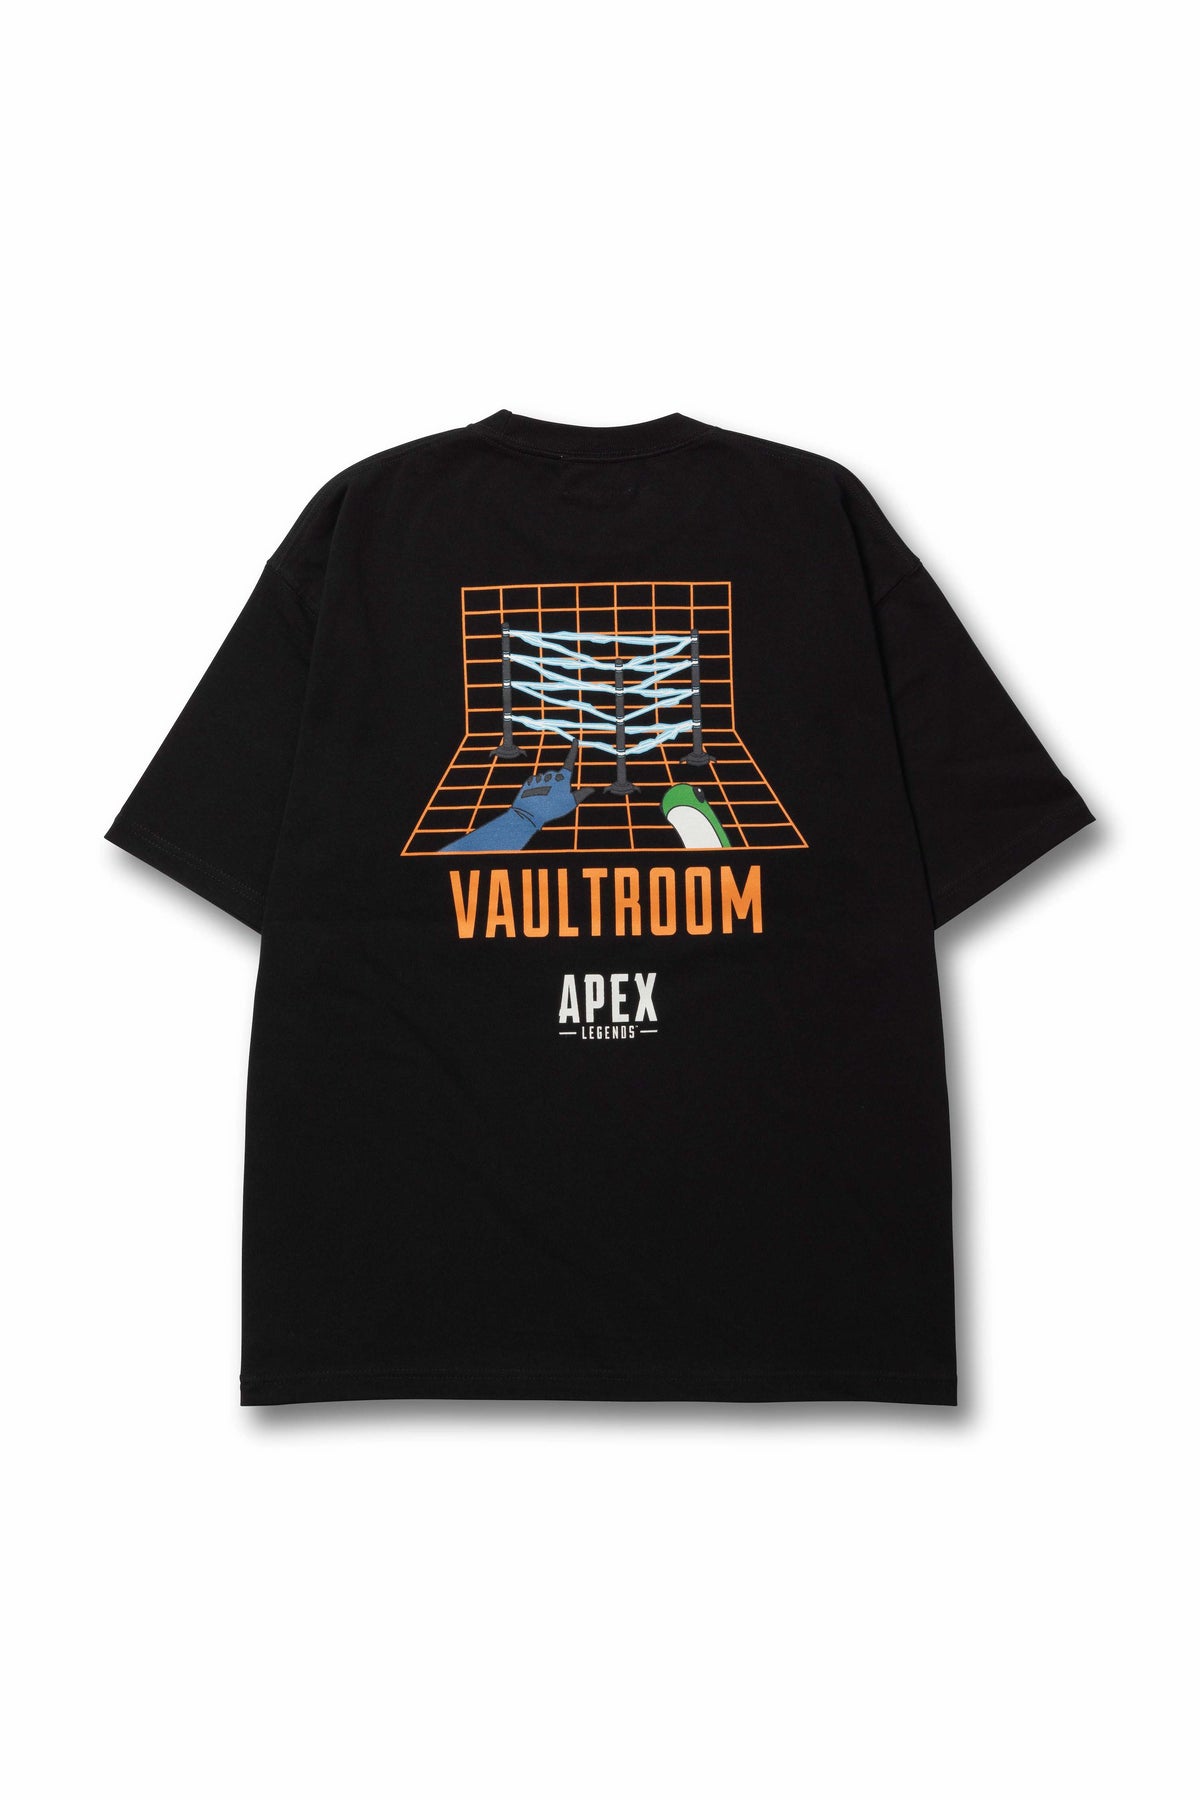 Vaultroom APEX LEGENDS WATTSON TEE XL